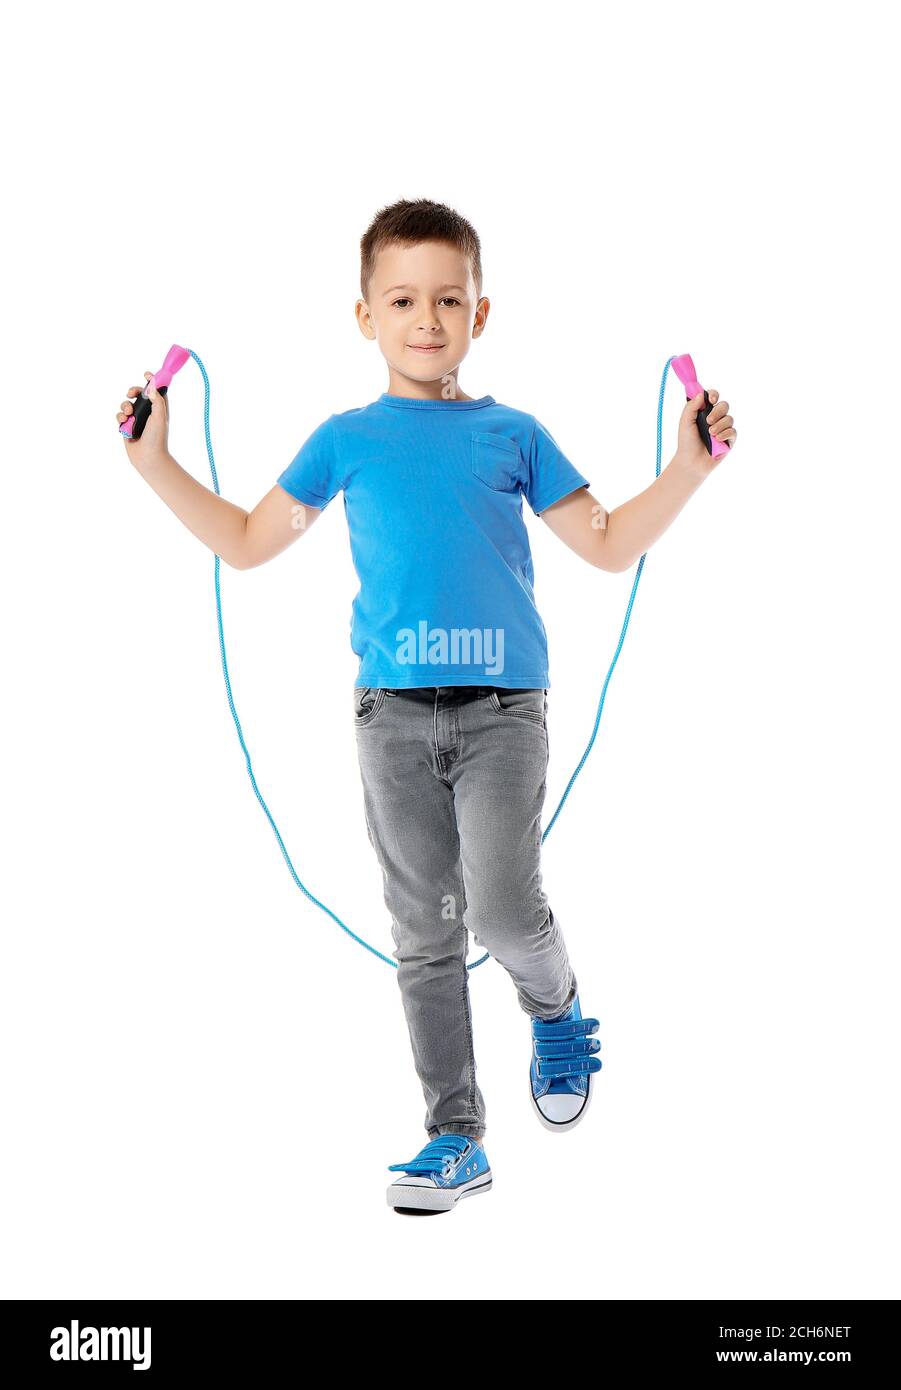 Lindo niño saltando cuerda contra fondo blanco Fotografía de stock - Alamy